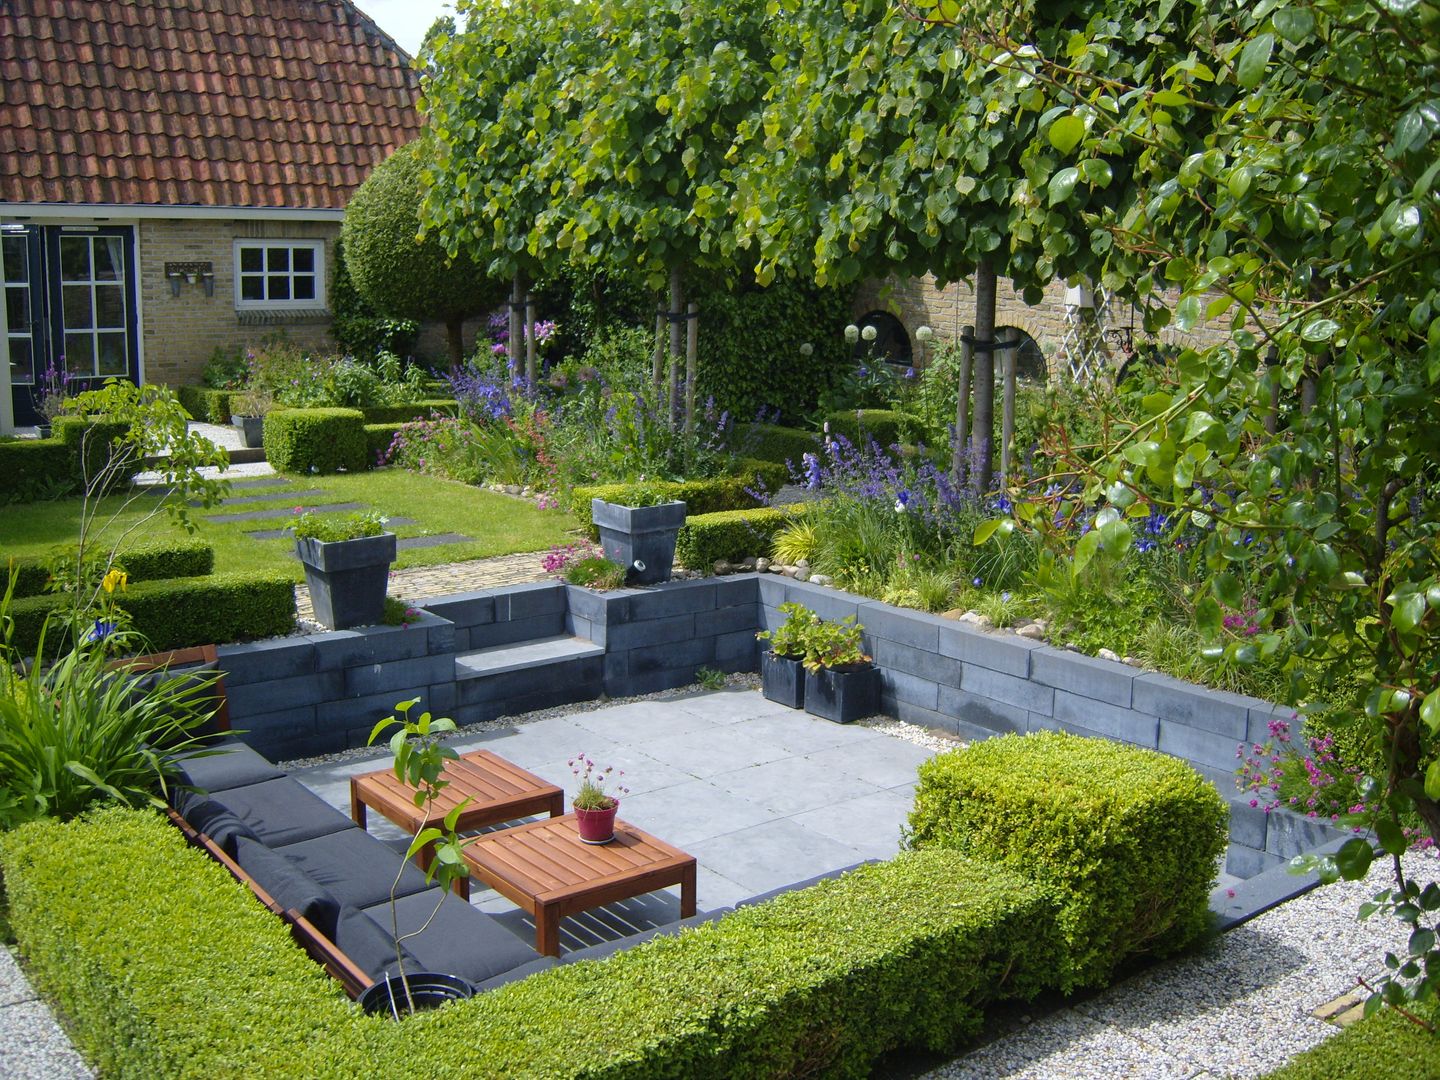 Moderne zitkuil in eigen tuin van tuinontwerper Joke Gerritsma, Joke Gerritsma Tuinontwerpen Joke Gerritsma Tuinontwerpen Modern style gardens Tiles